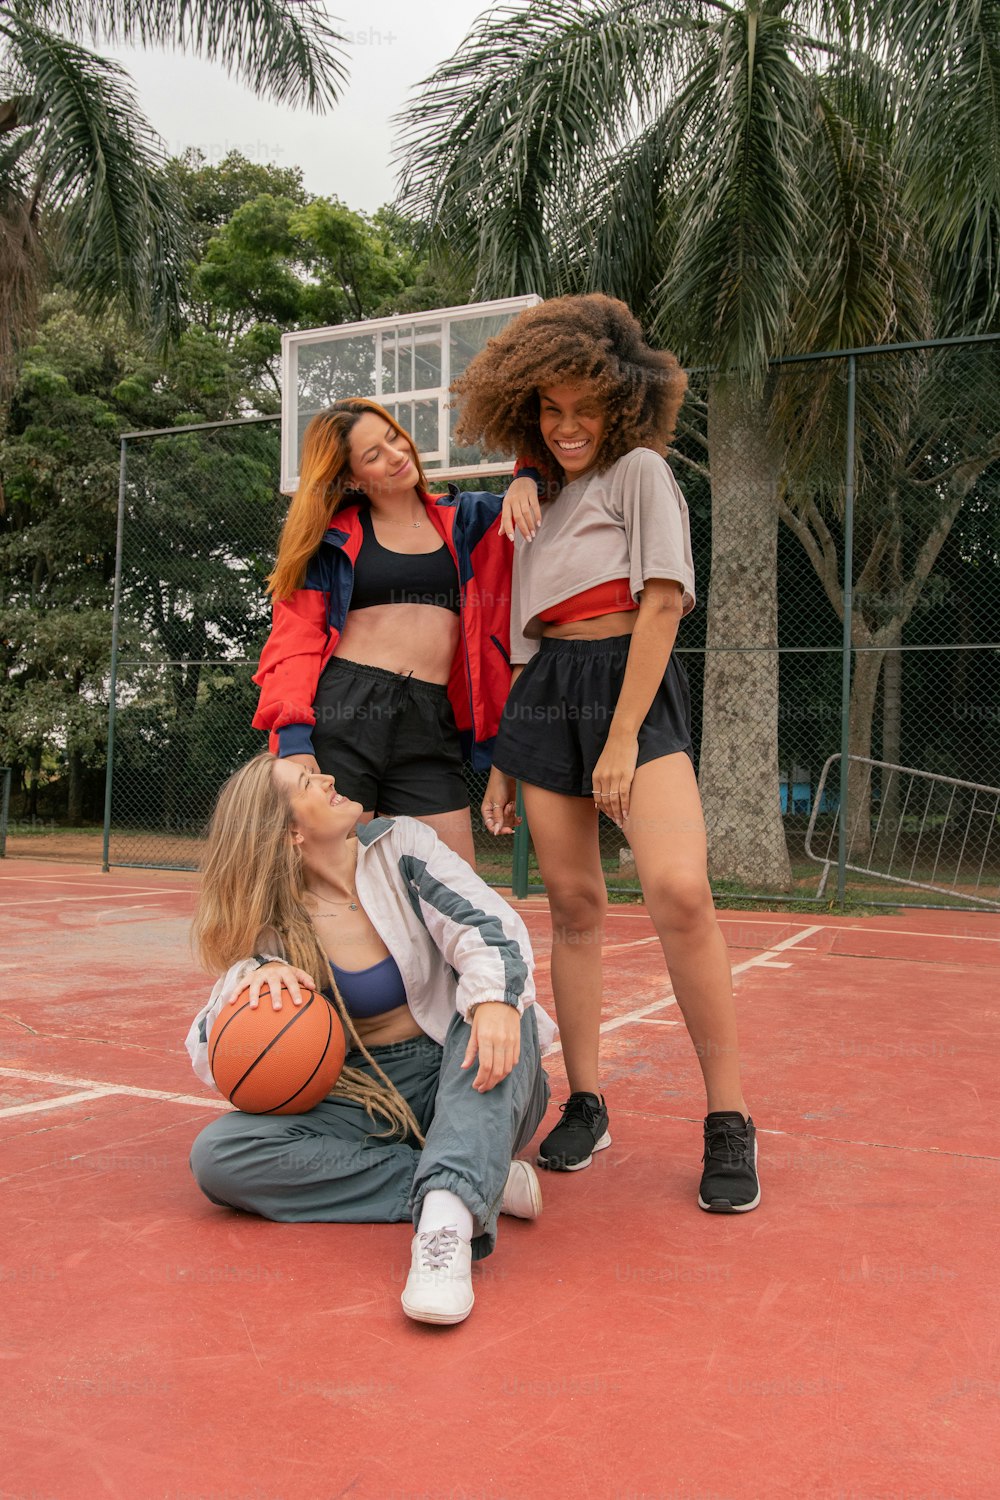 농구 코트 위에 서 있는 한 무리의 젊은 여성들